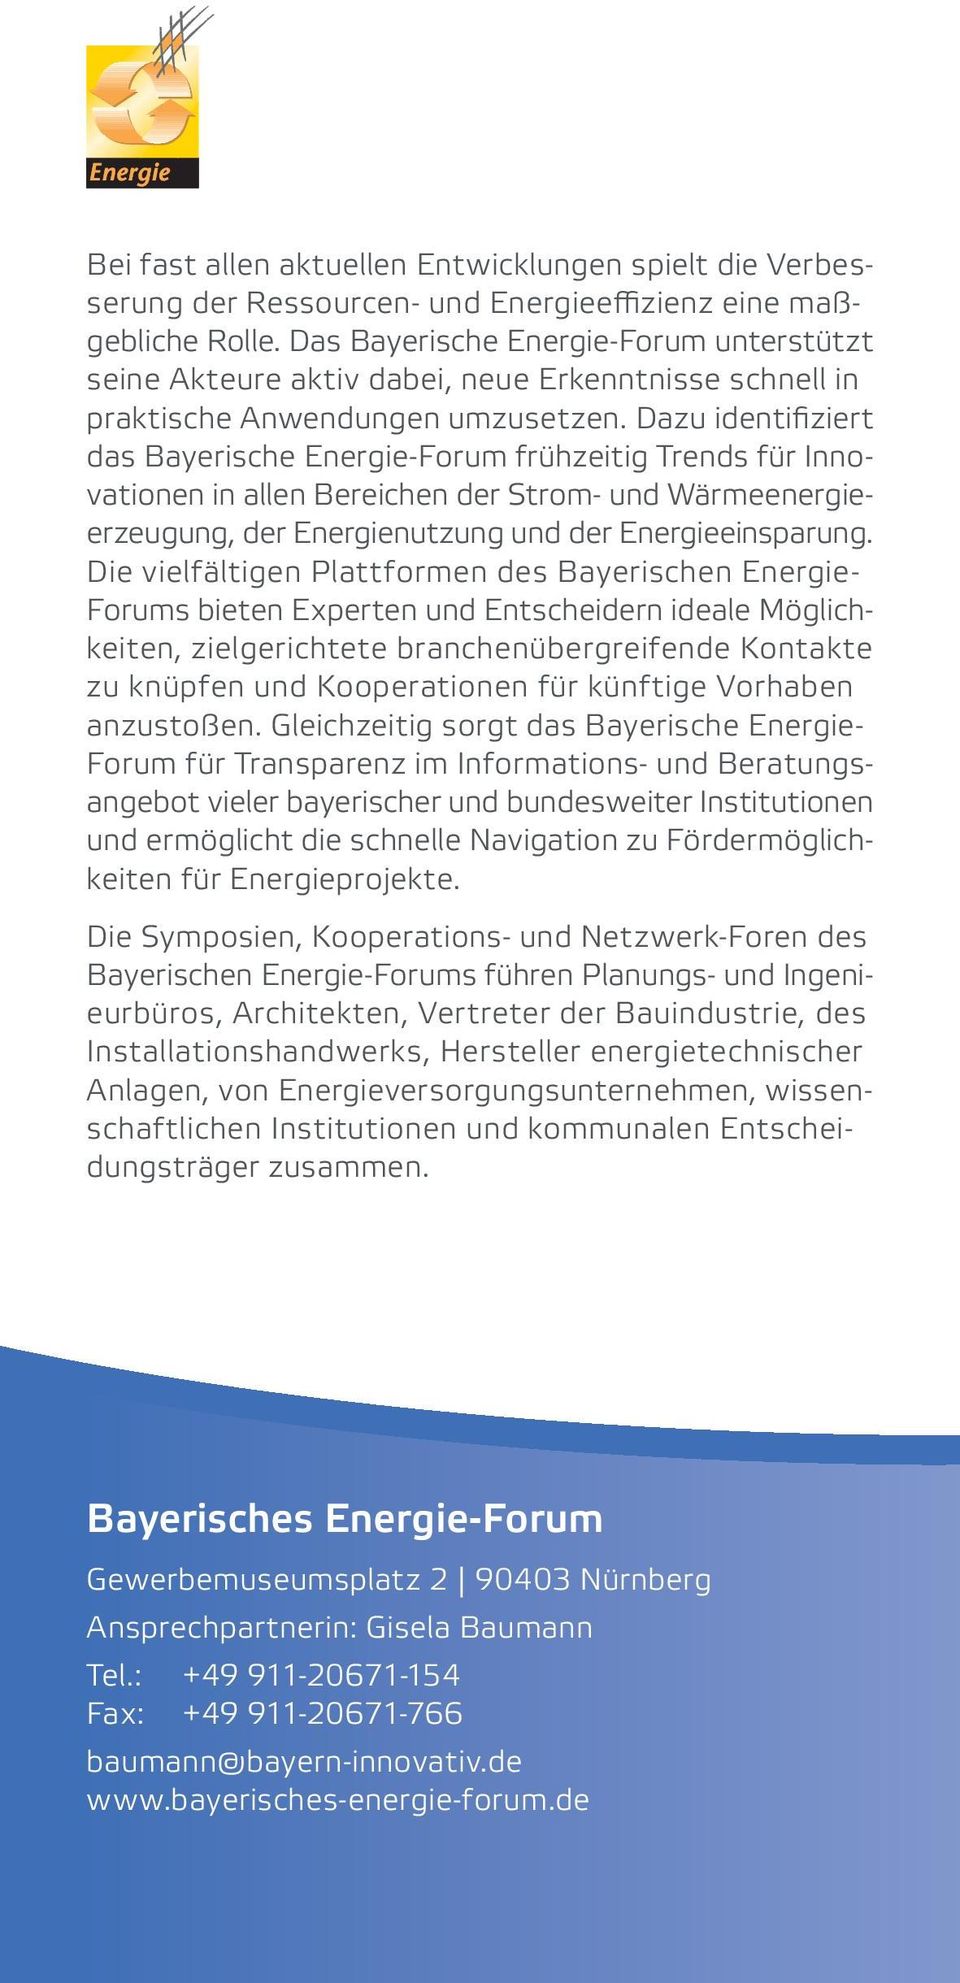 Dazu identifiziert das Bayerische Energie-Forum frühzeitig Trends für Innovationen in allen Bereichen der Strom- und Wärmeenergieerzeugung, der Energienutzung und der Energieeinsparung.